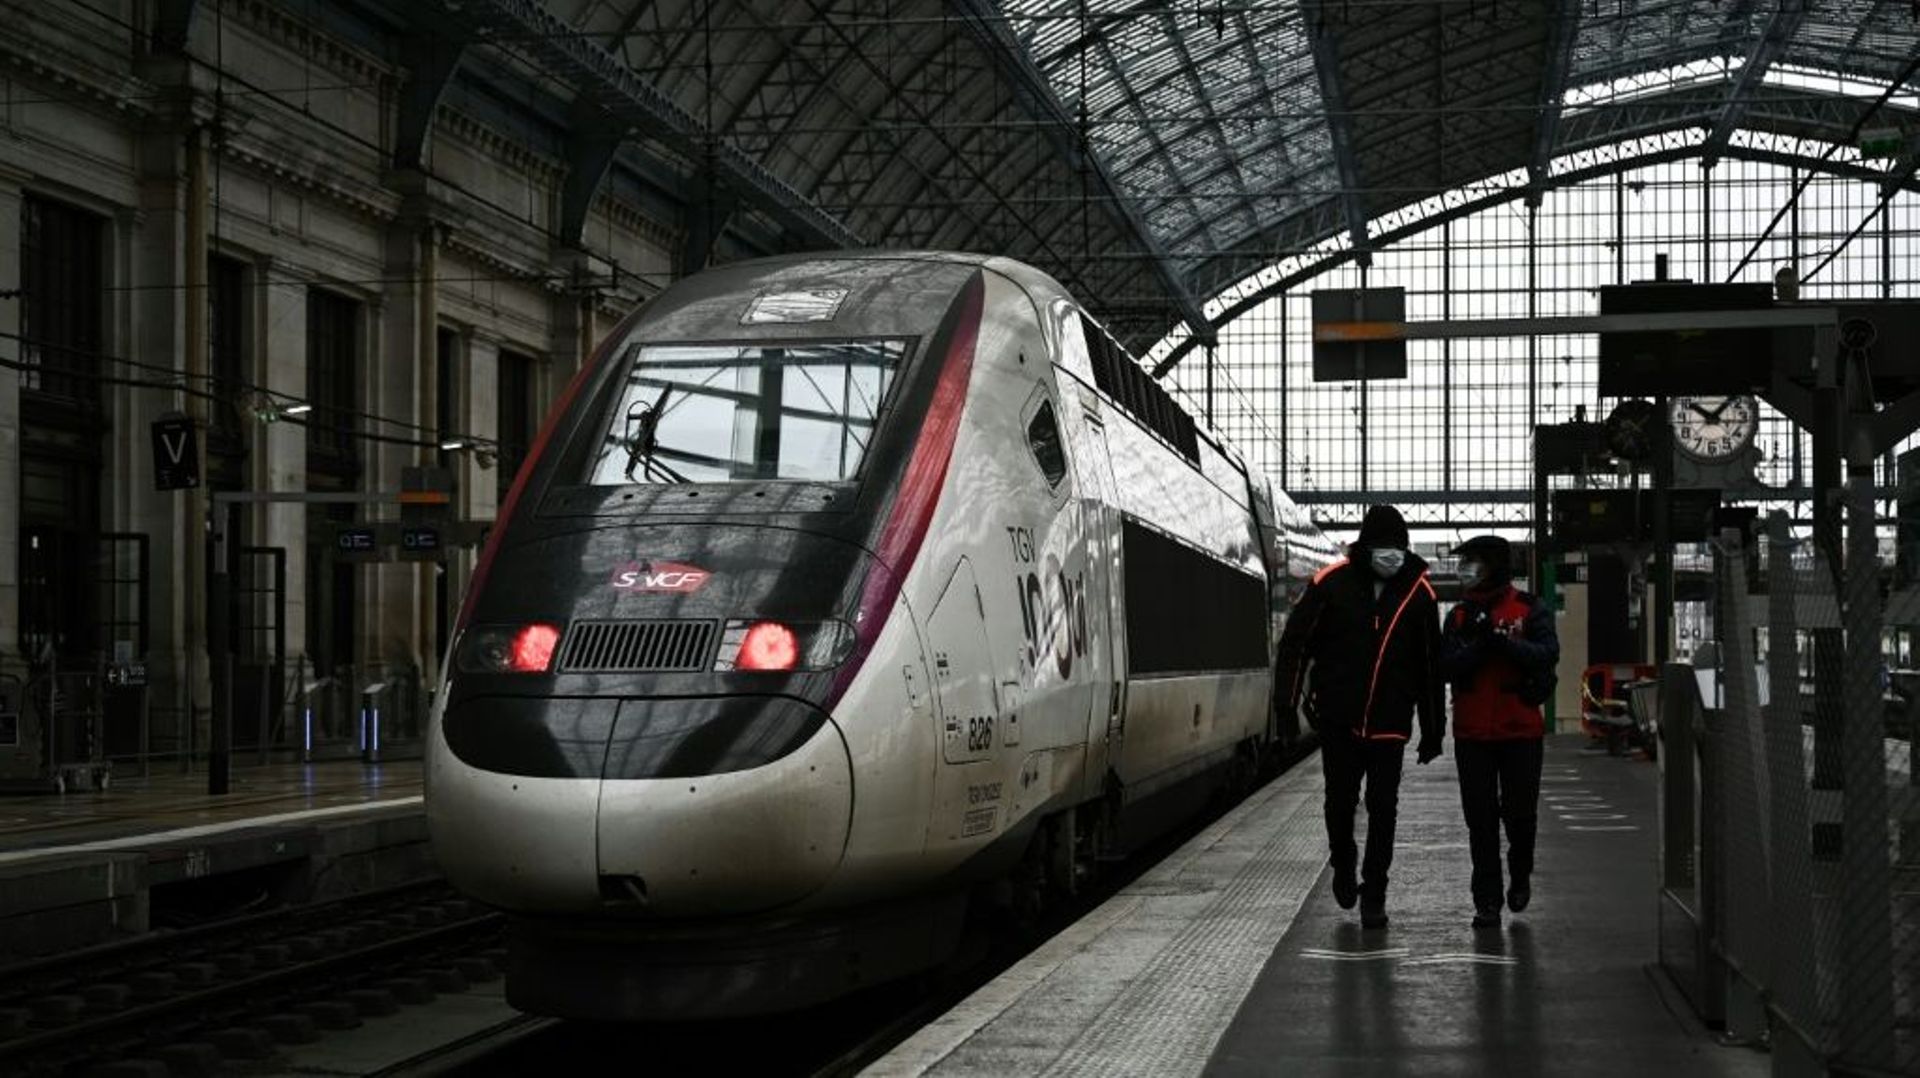 Des membres du personnel SNCF en gare de Bordeaux, le 25 novembre 2021

